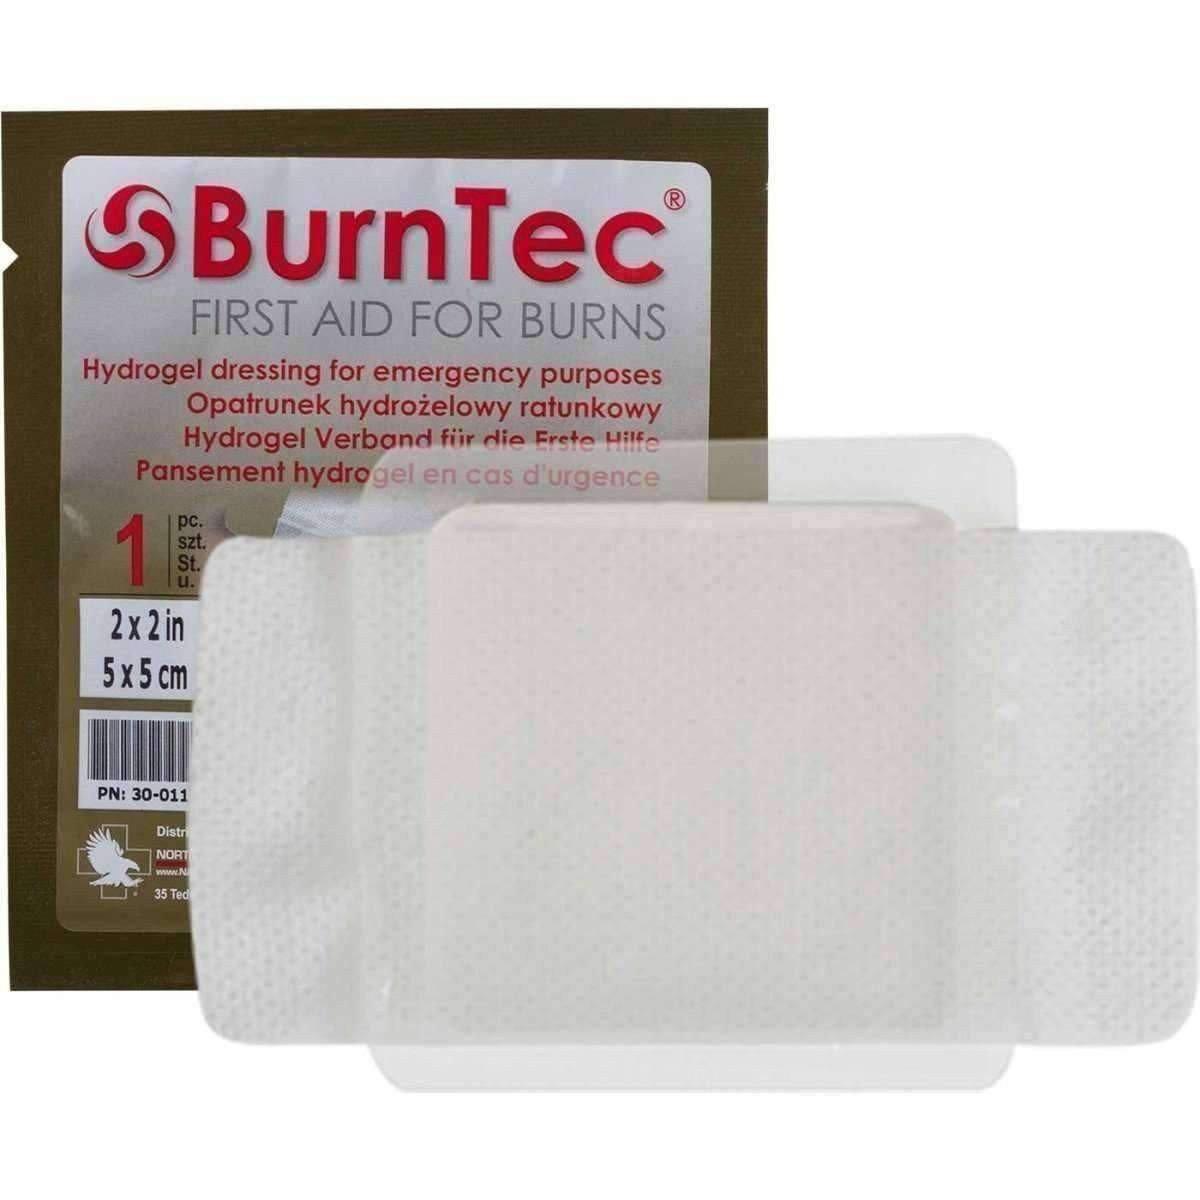 BurnTec Dressing - Vendor